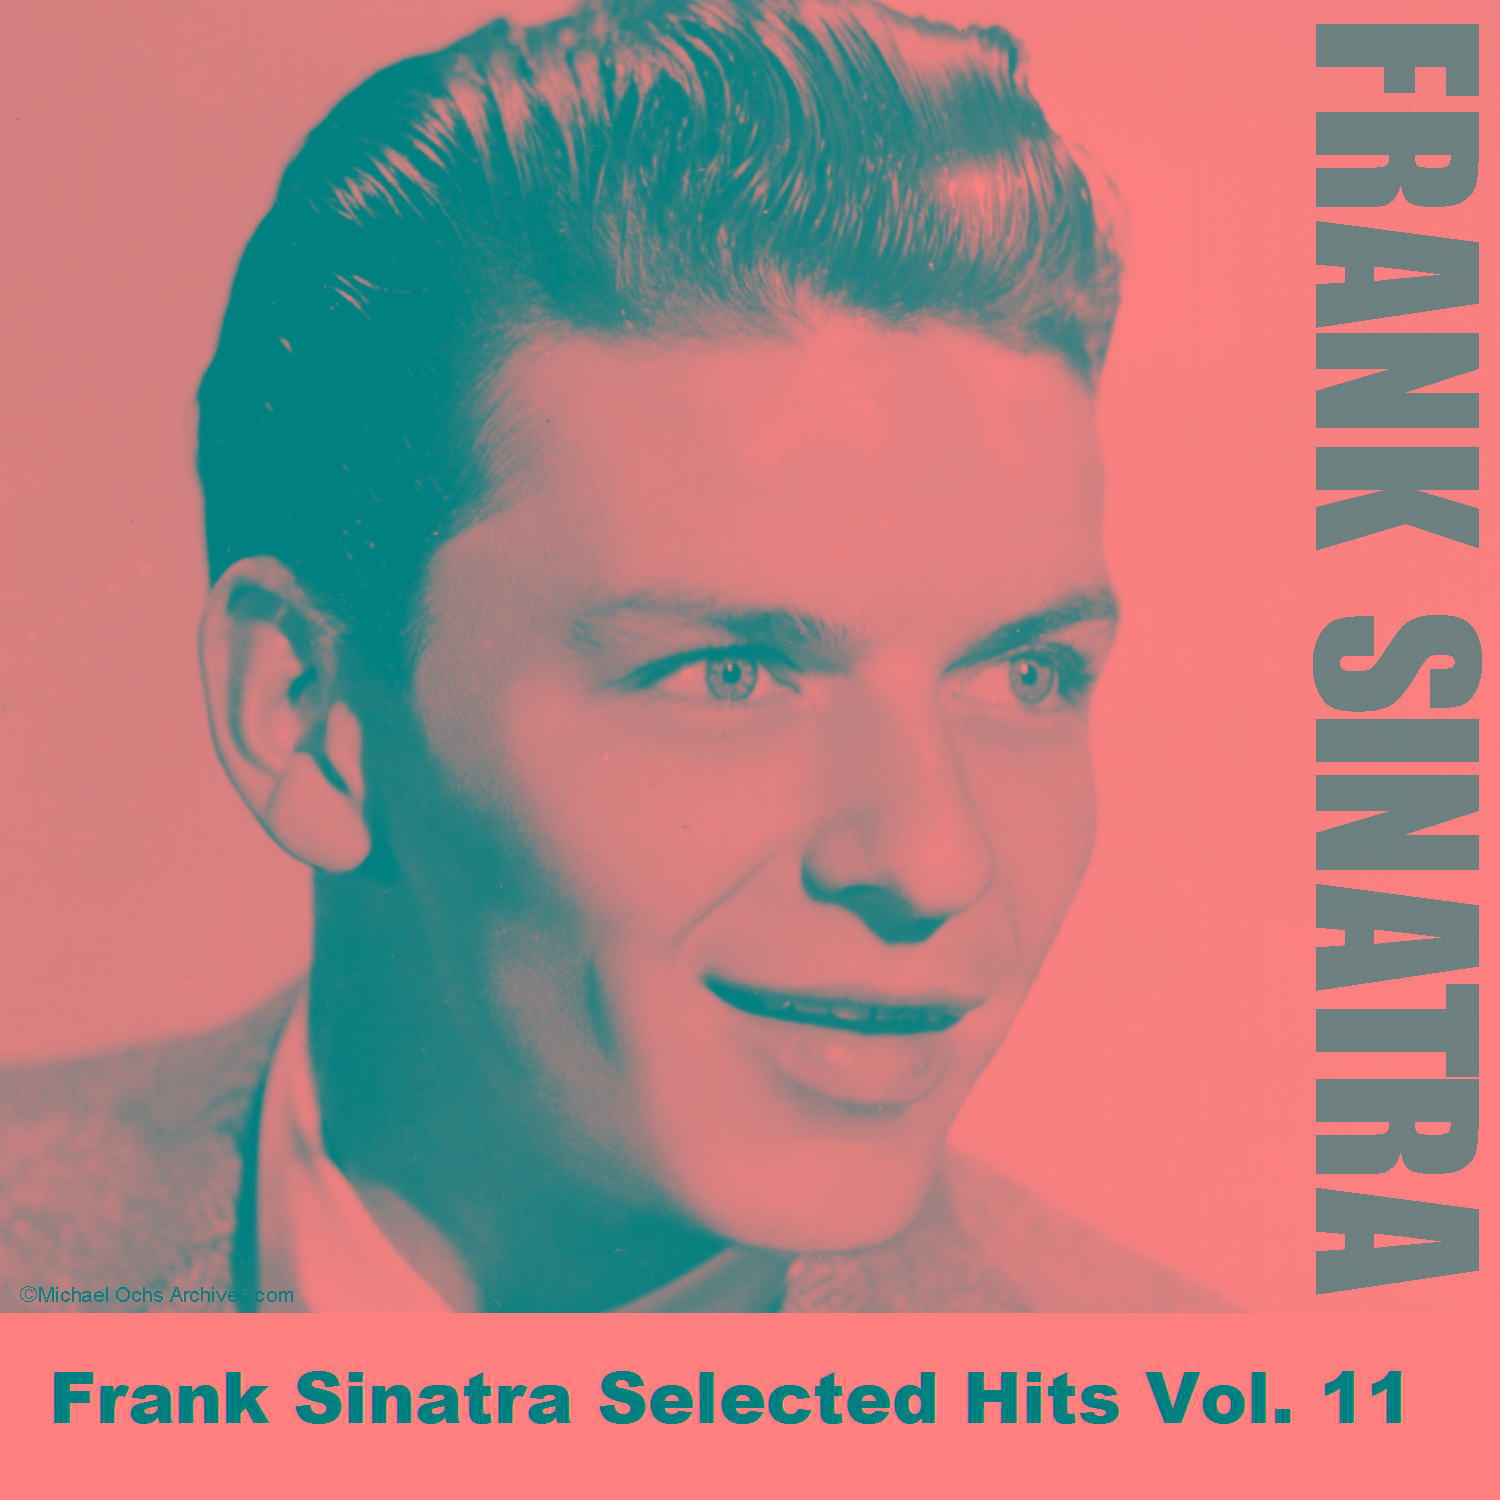 Frank Sinatra Selected Hits Vol. 11